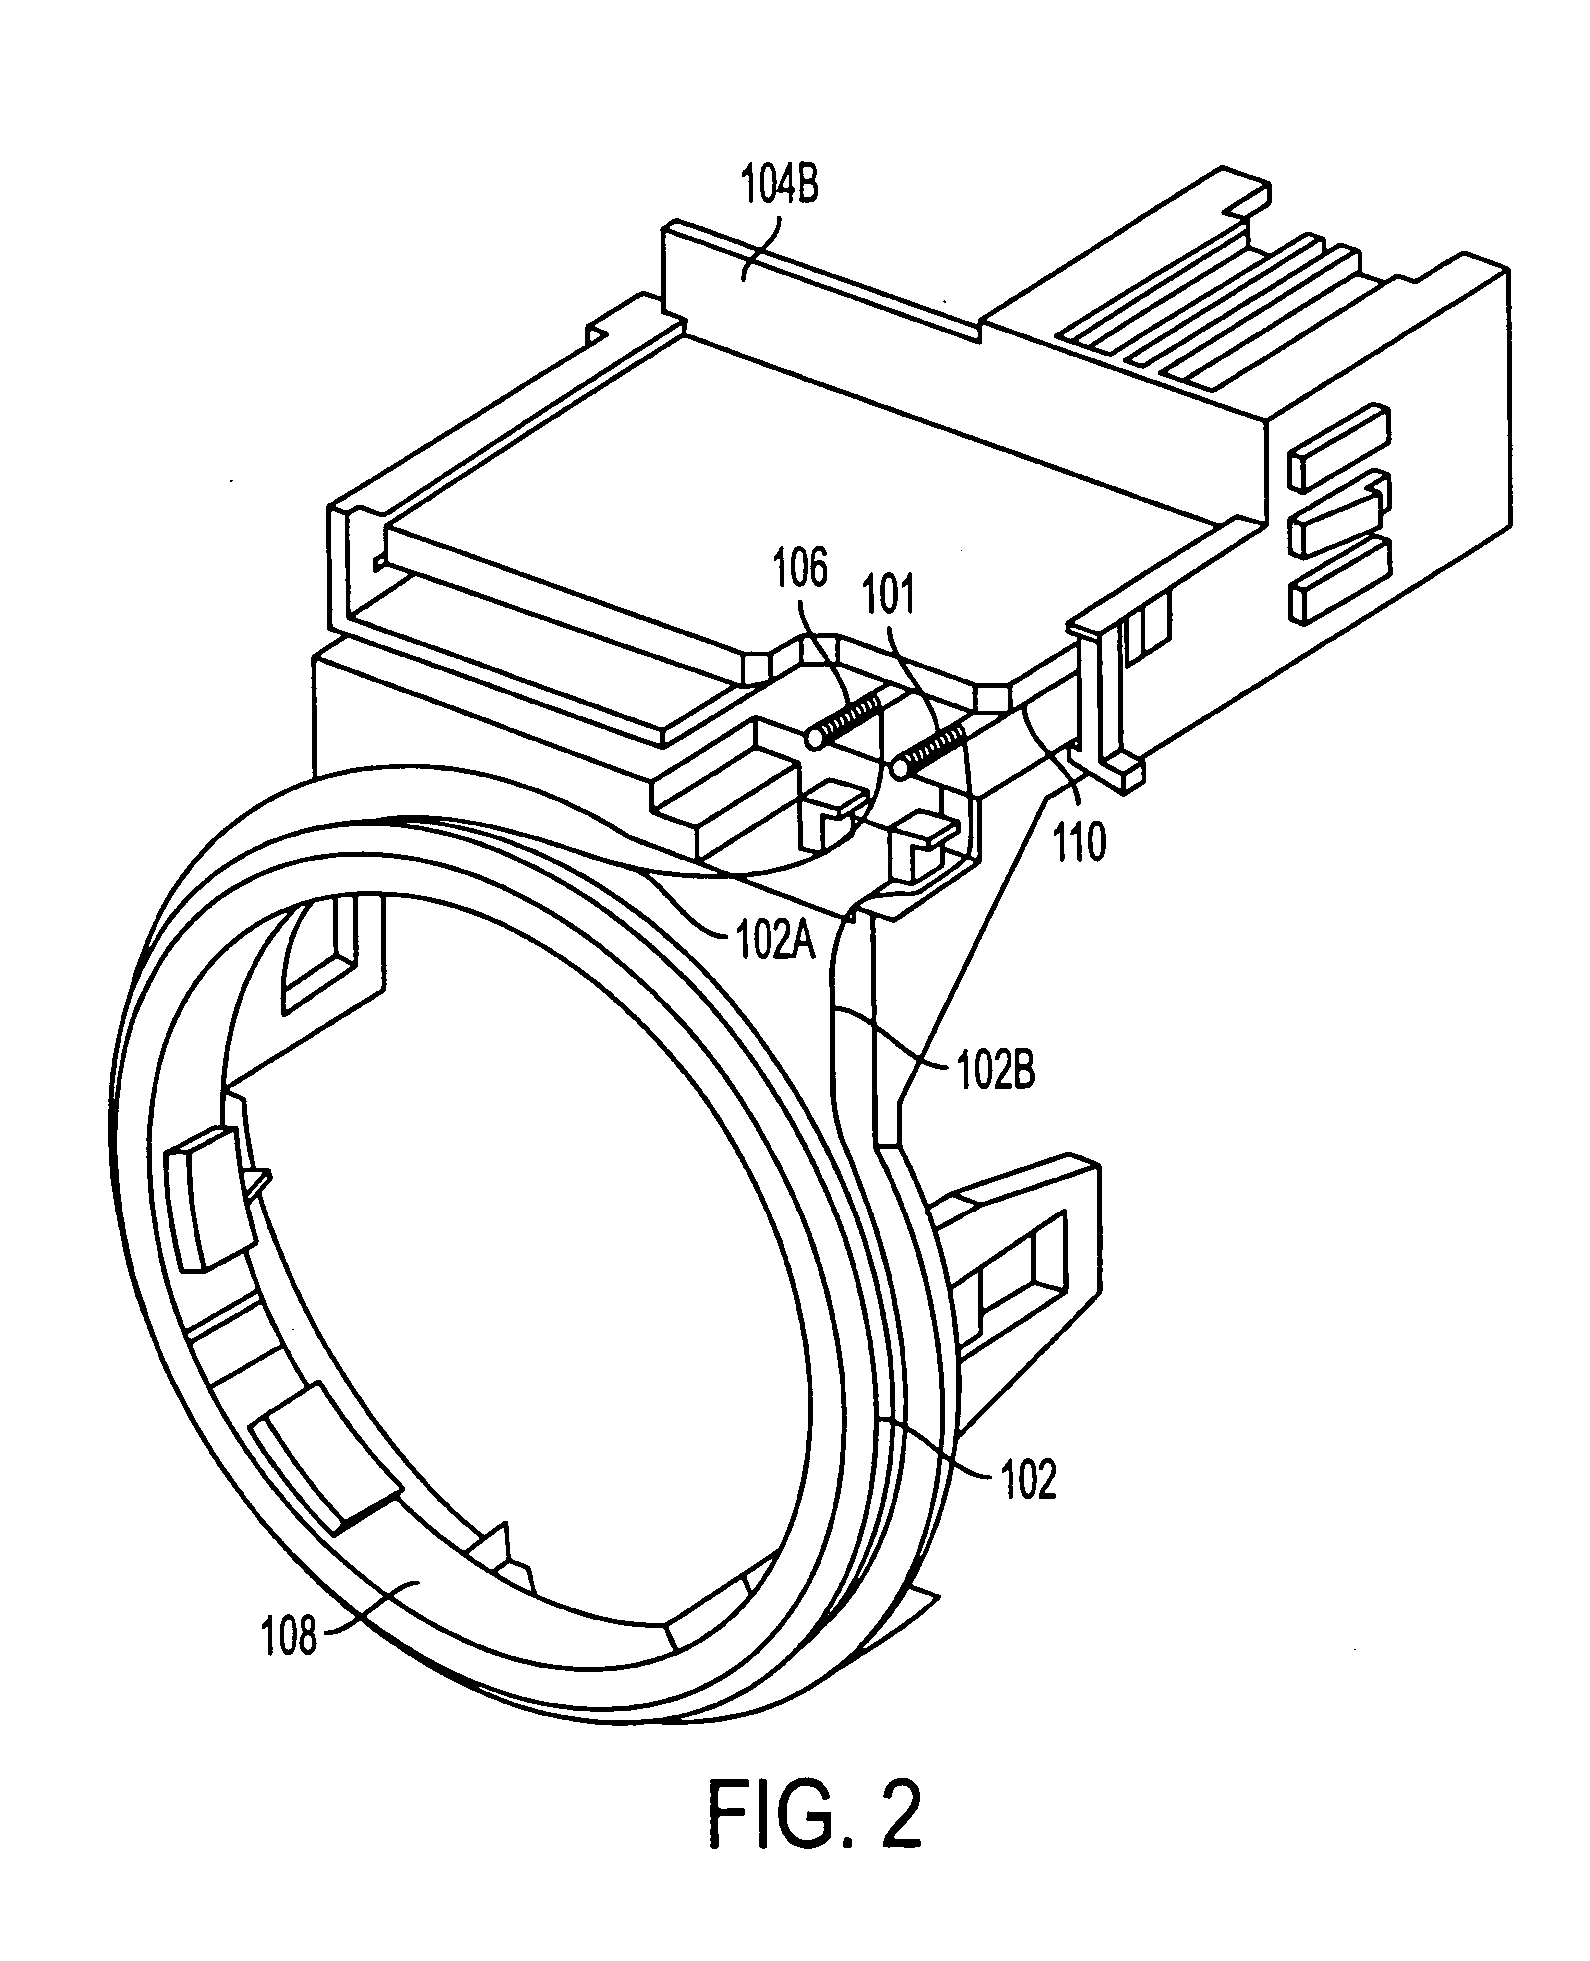 Immobilizer coil attachment